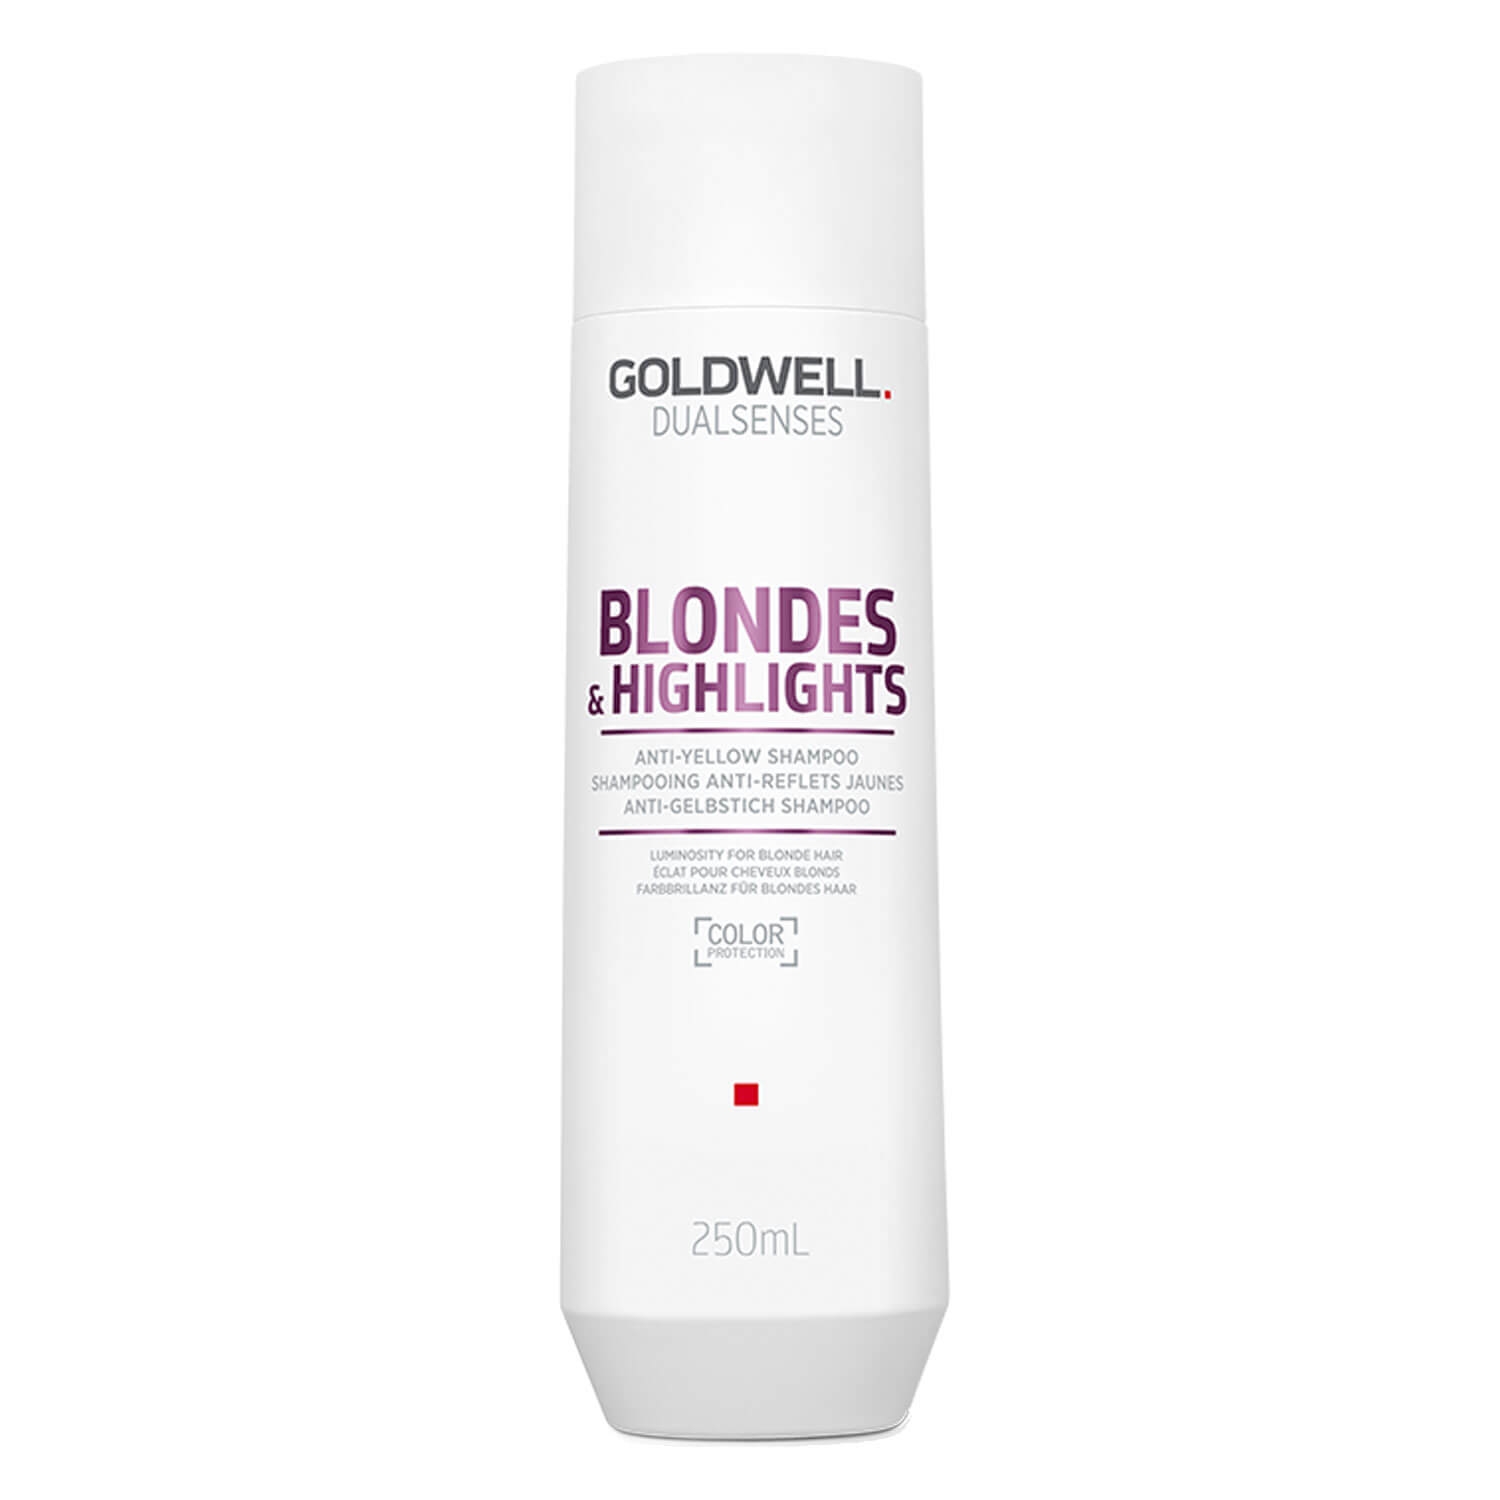 Produktbild von Dualsenses Blondes & Highlights - Anti-Yellow Shampoo